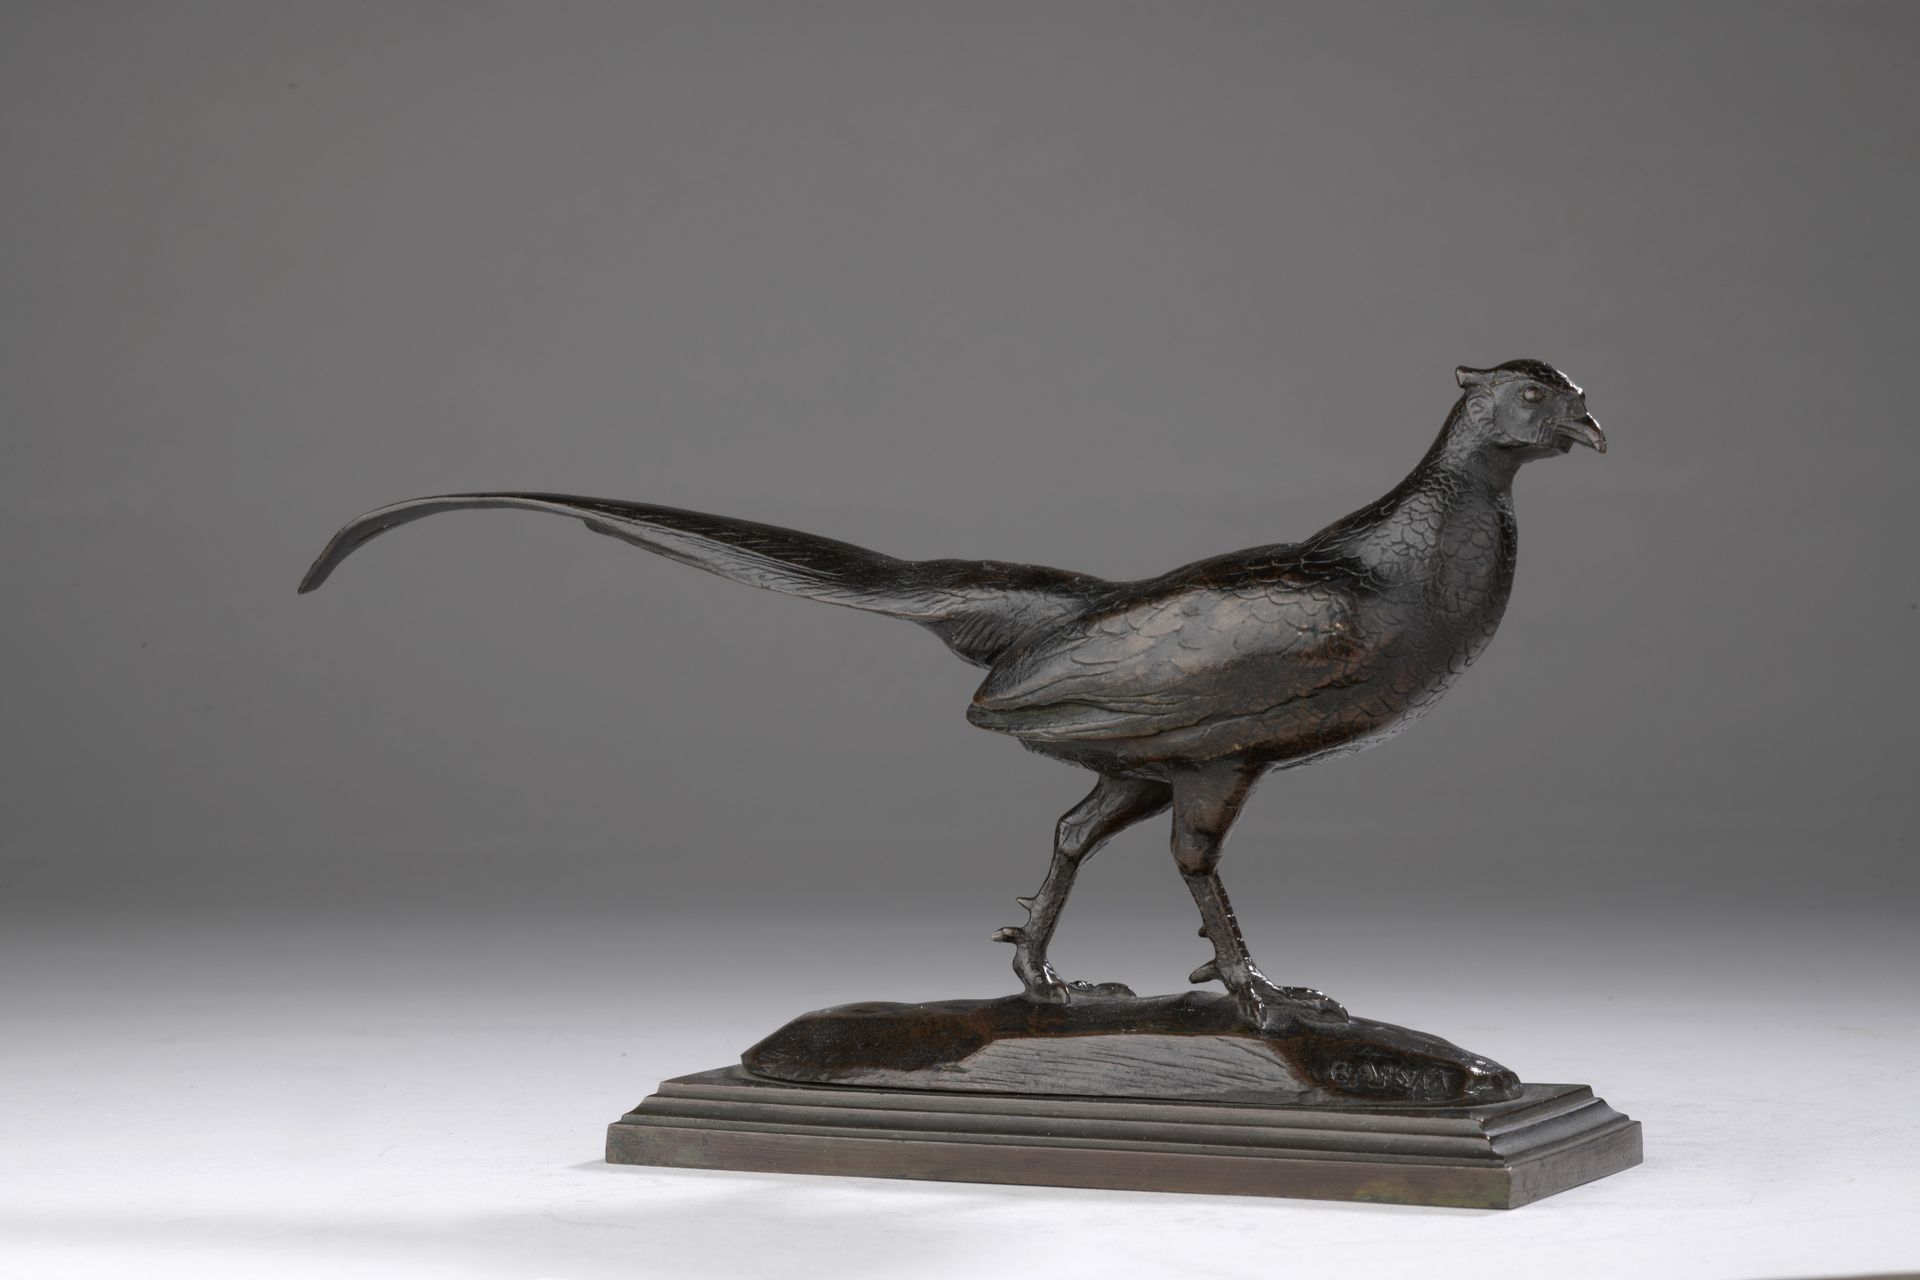 Null 安托万-路易-巴耶 (1795-1875)
雉鸡（头转向右边）
1857年至1875年间由巴耶工作室铸造 
青铜，带有棕色的铜锈
平台上有 "BARY&hellip;